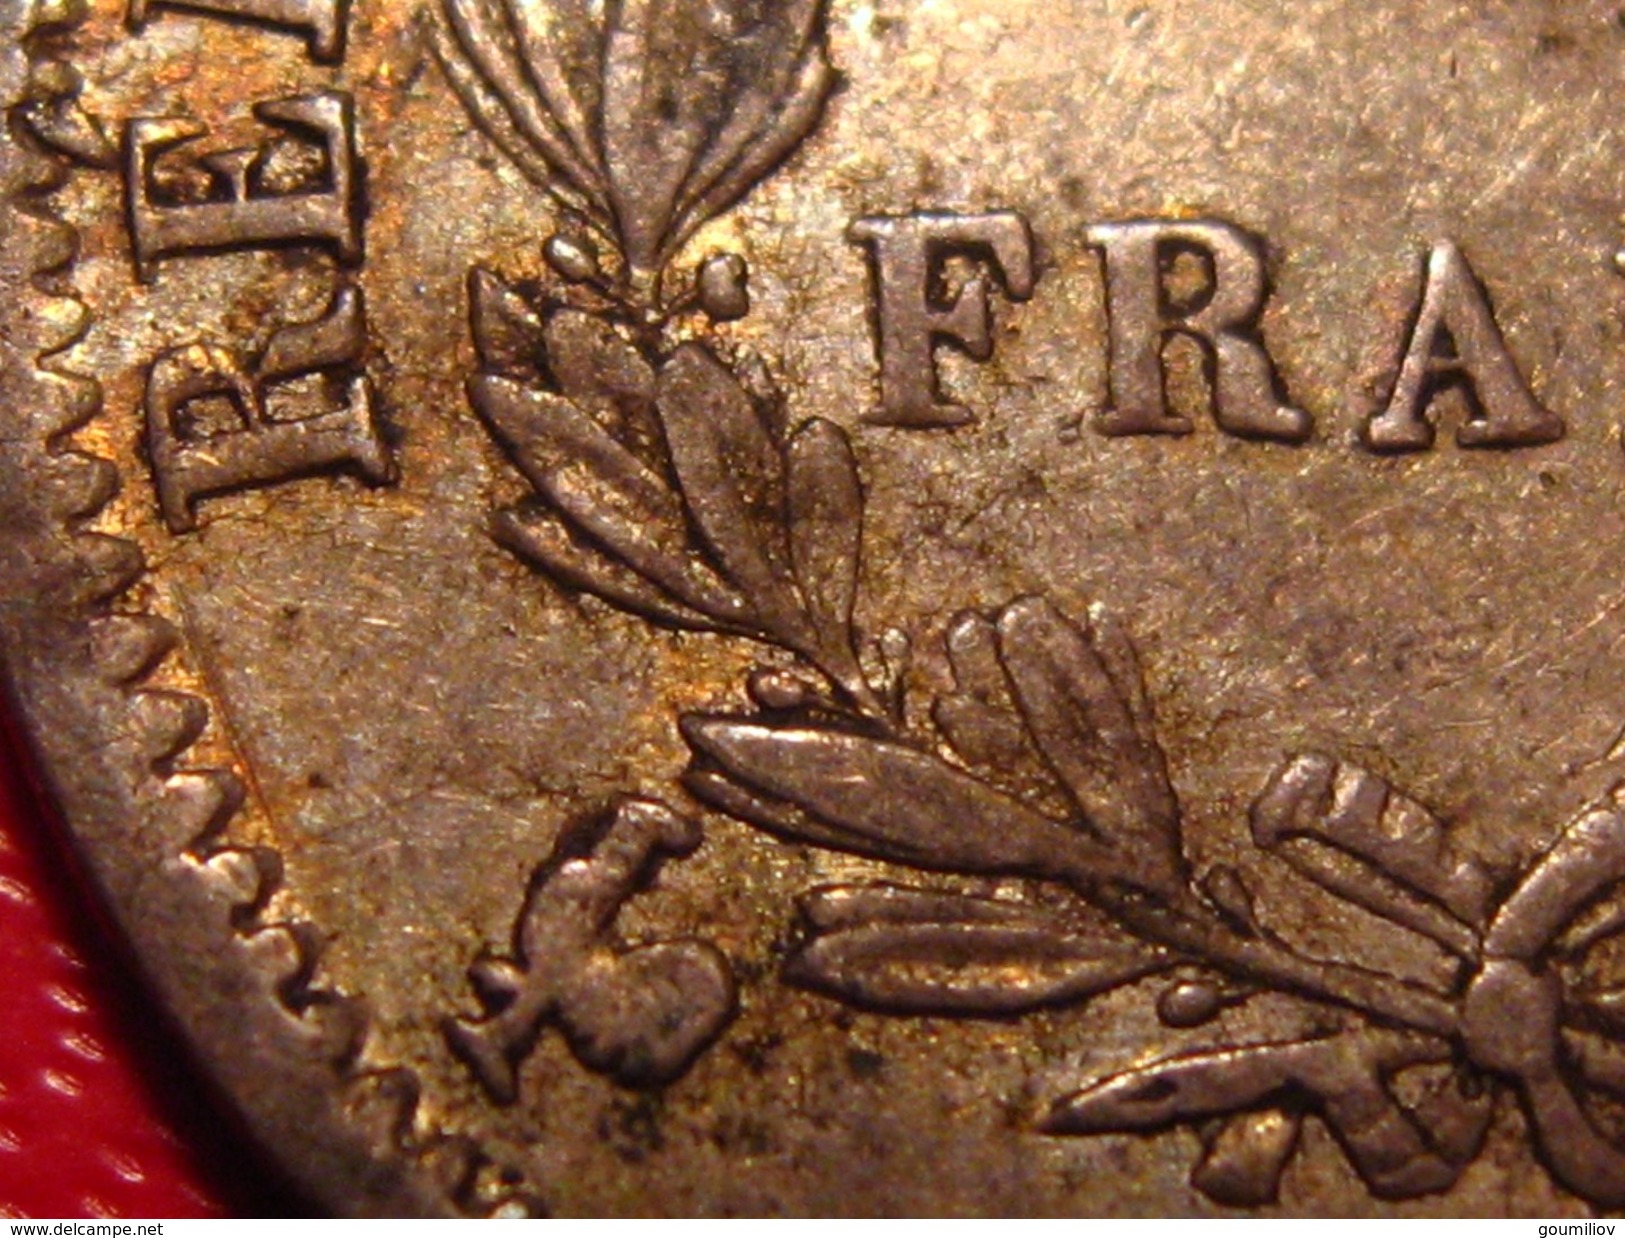 France - 1 Franc 1808 A Paris Napoléon Ier - Superbe Patine Dorée 0193 - 1 Franc